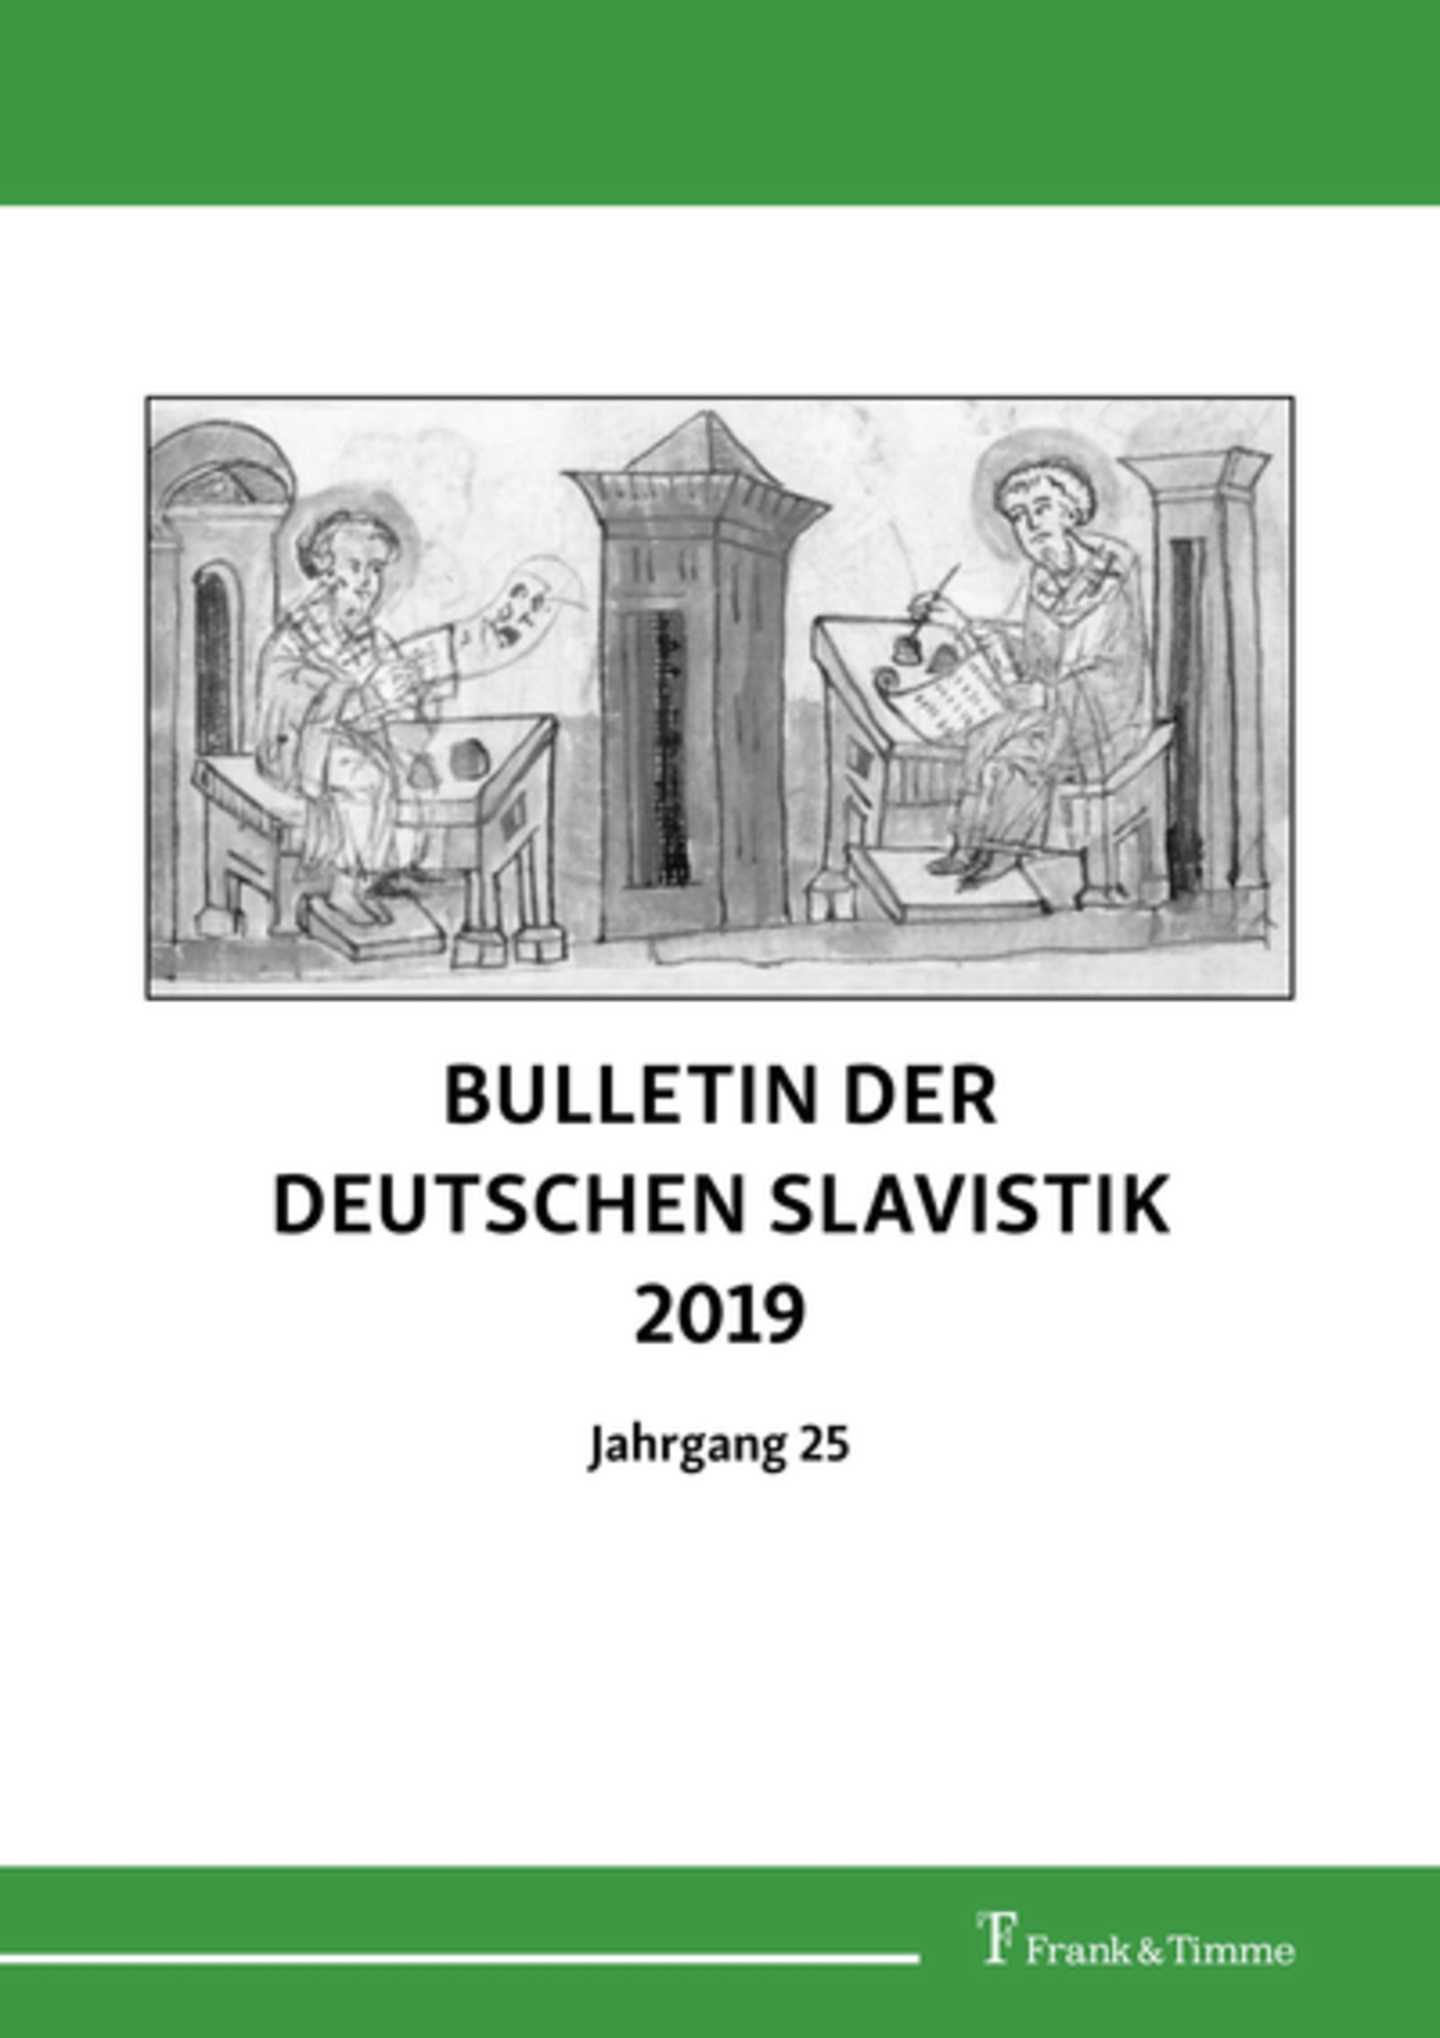 Bulletin der deutschen Slavistik 25 (2019)